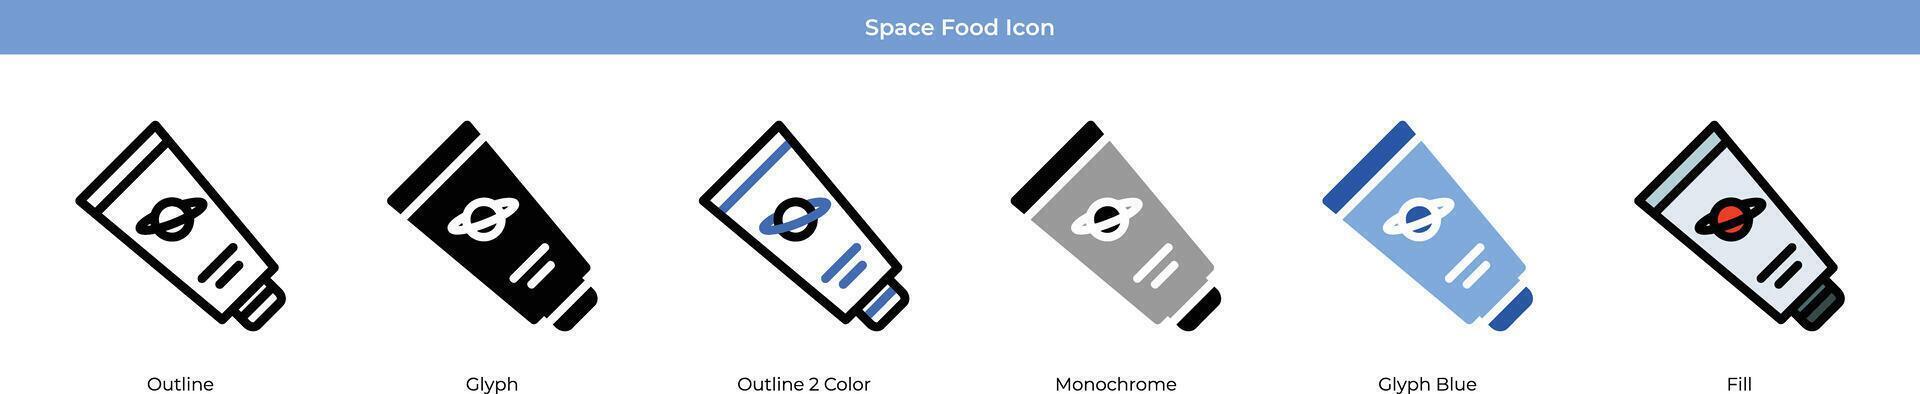 espacio comida icono conjunto vector